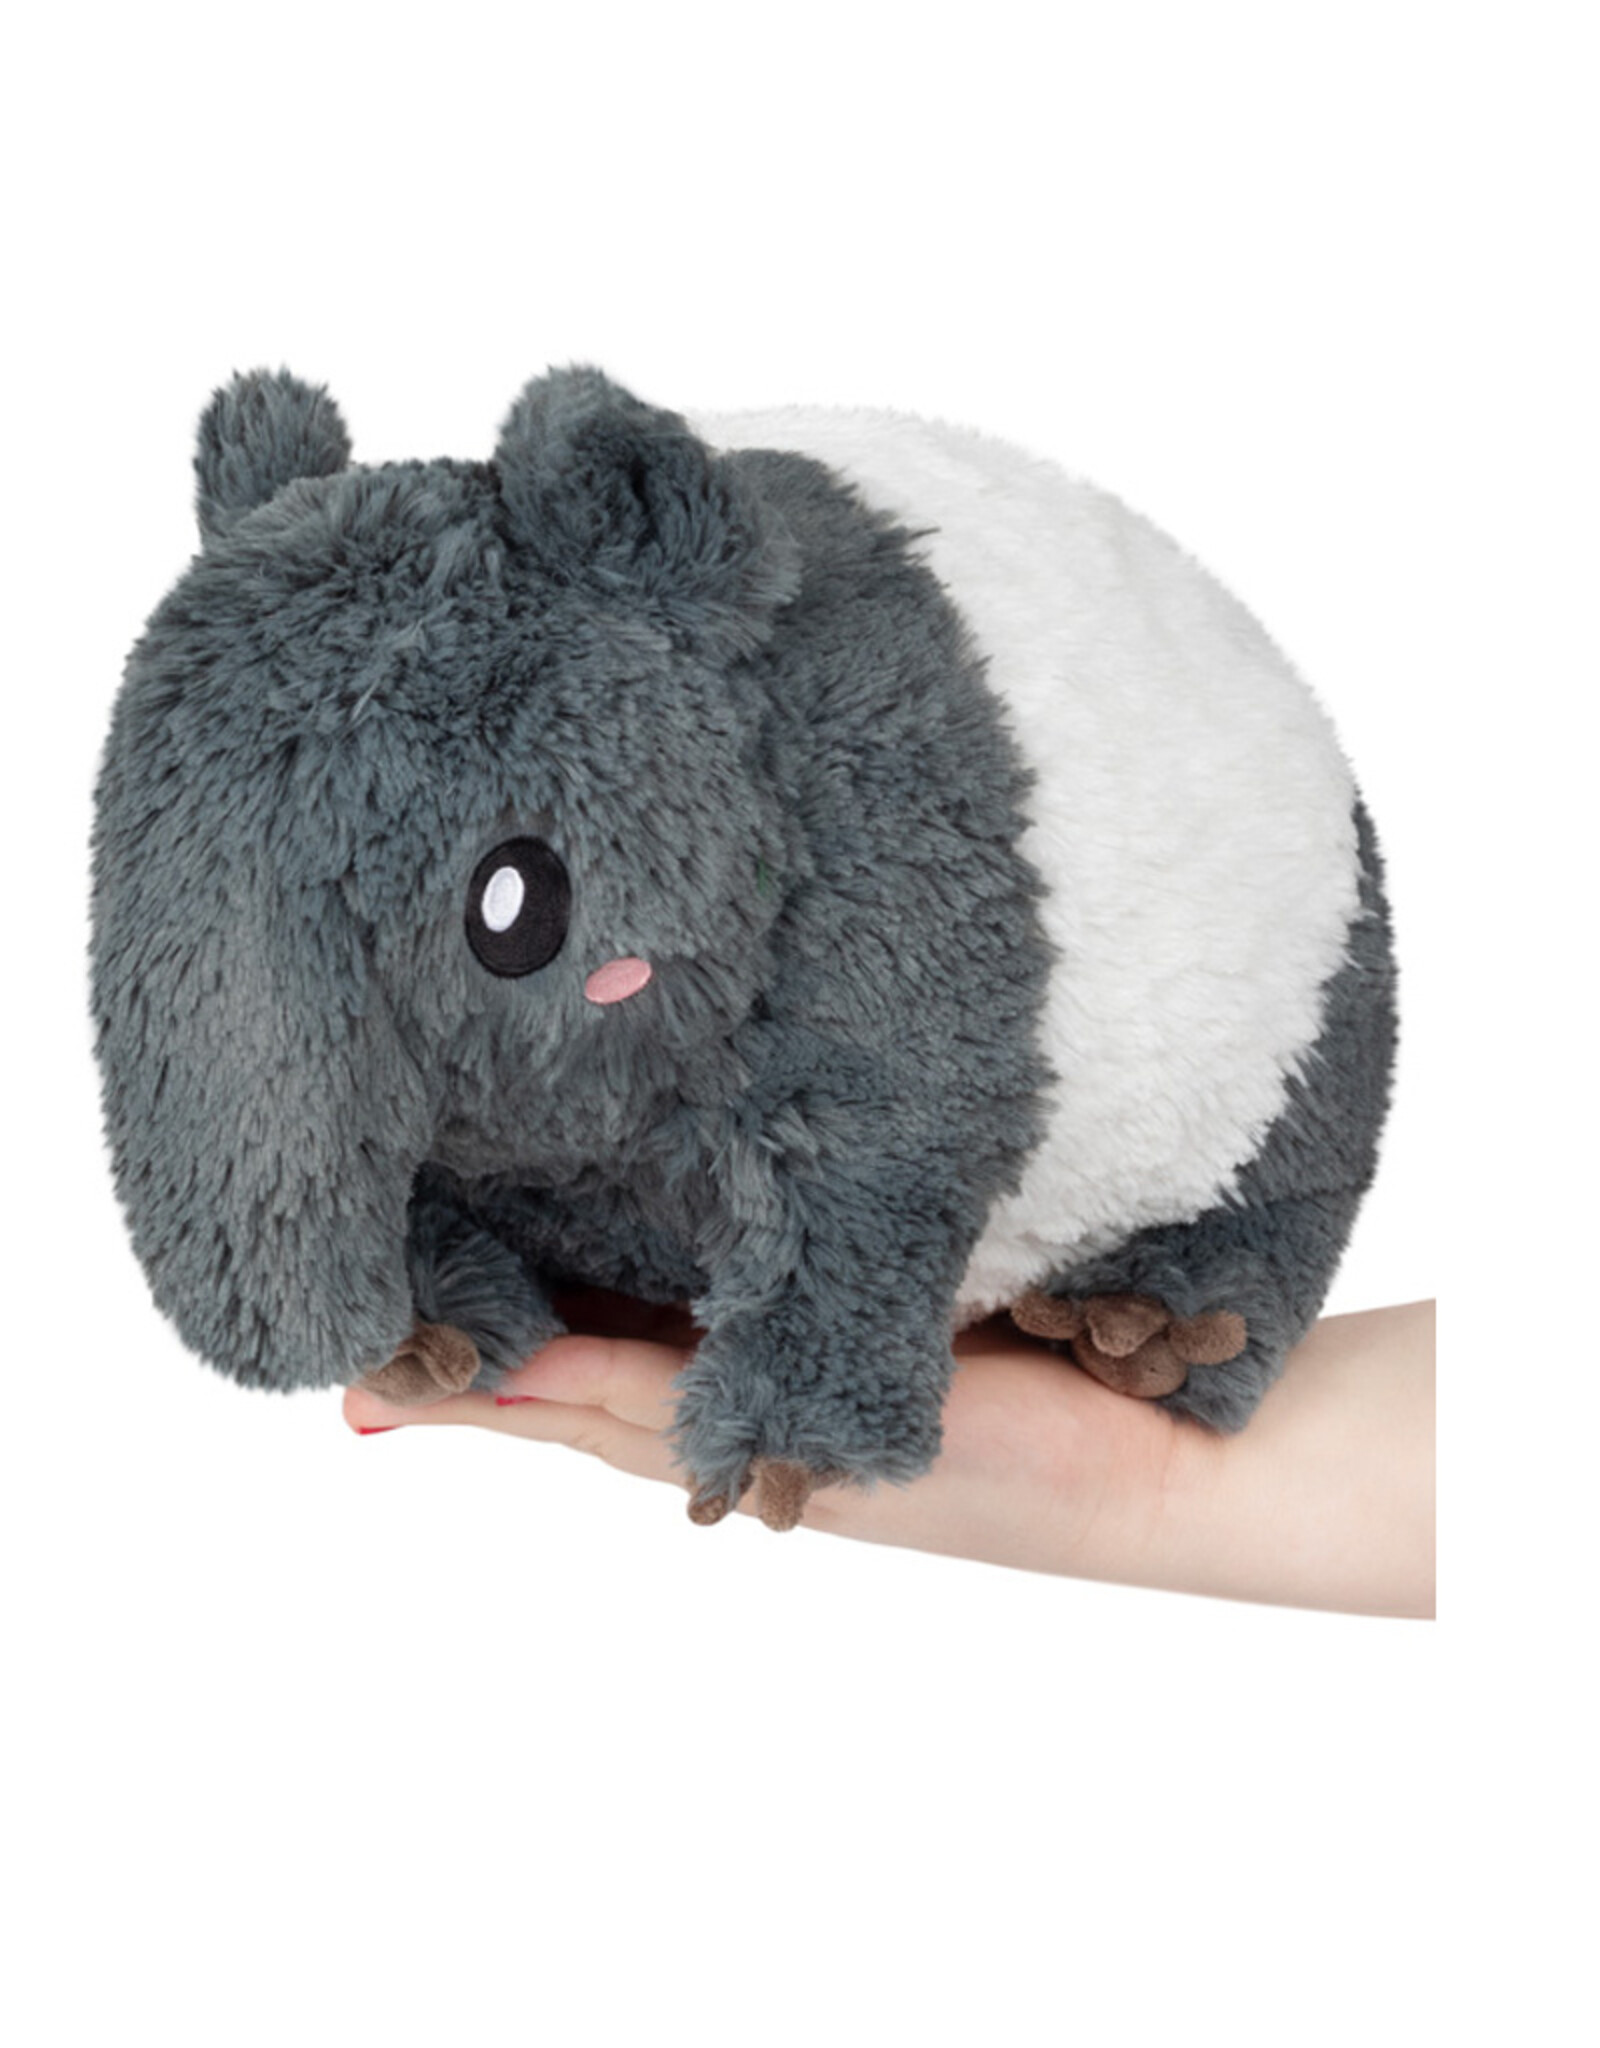 Squishable Squishables - Mini Tapir